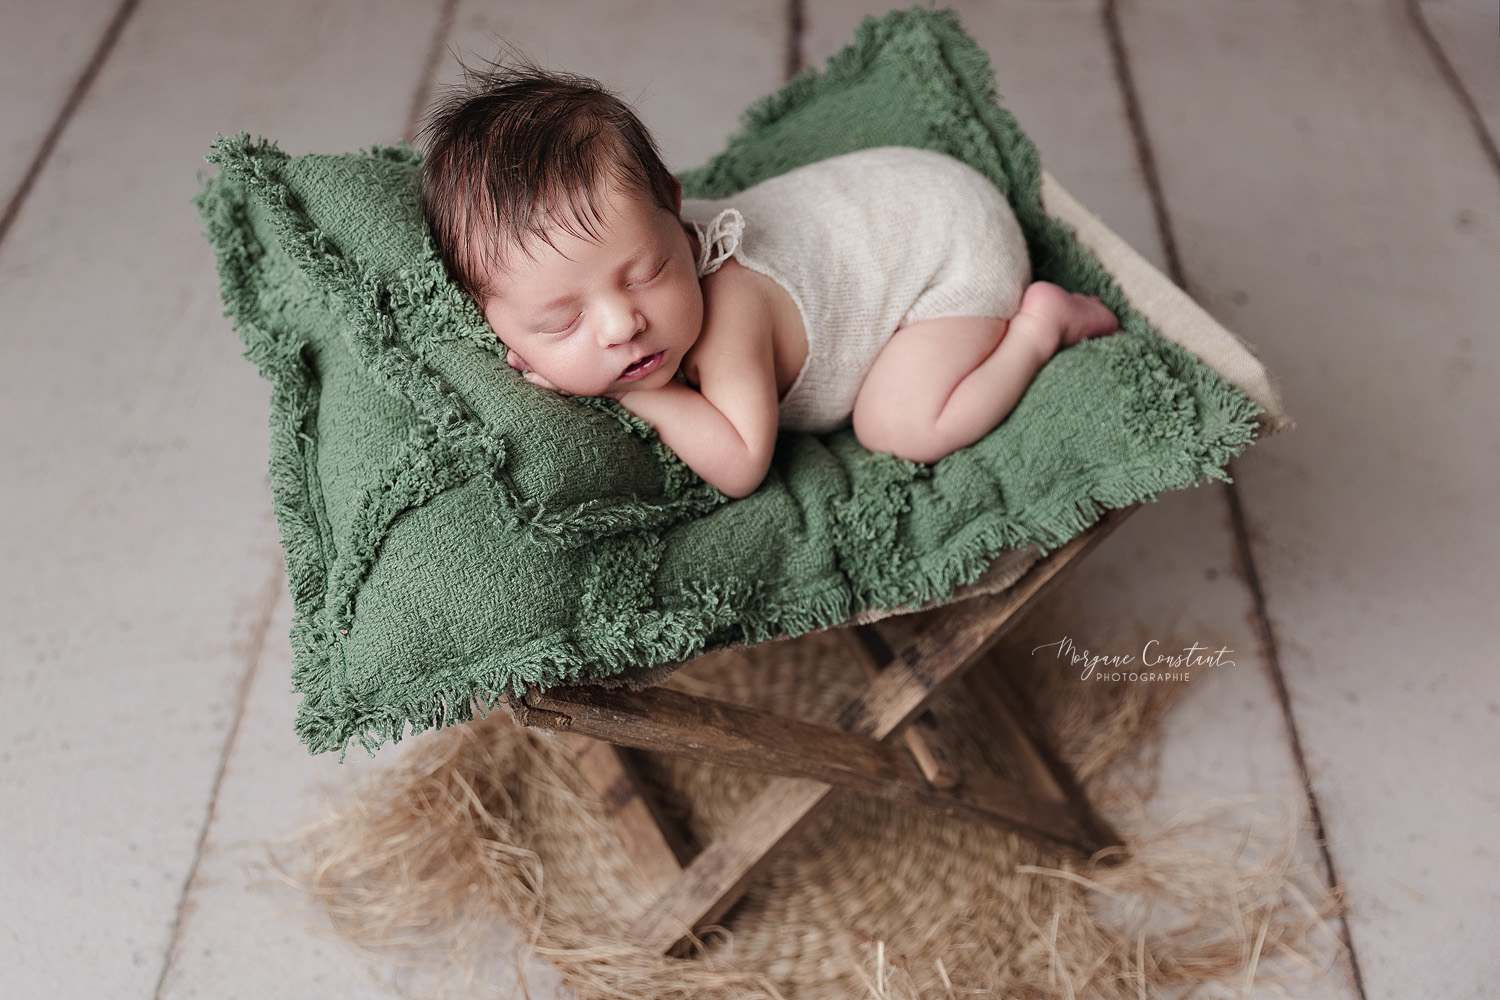 Bébé endormi dans un transat en bois avec un matelas vert